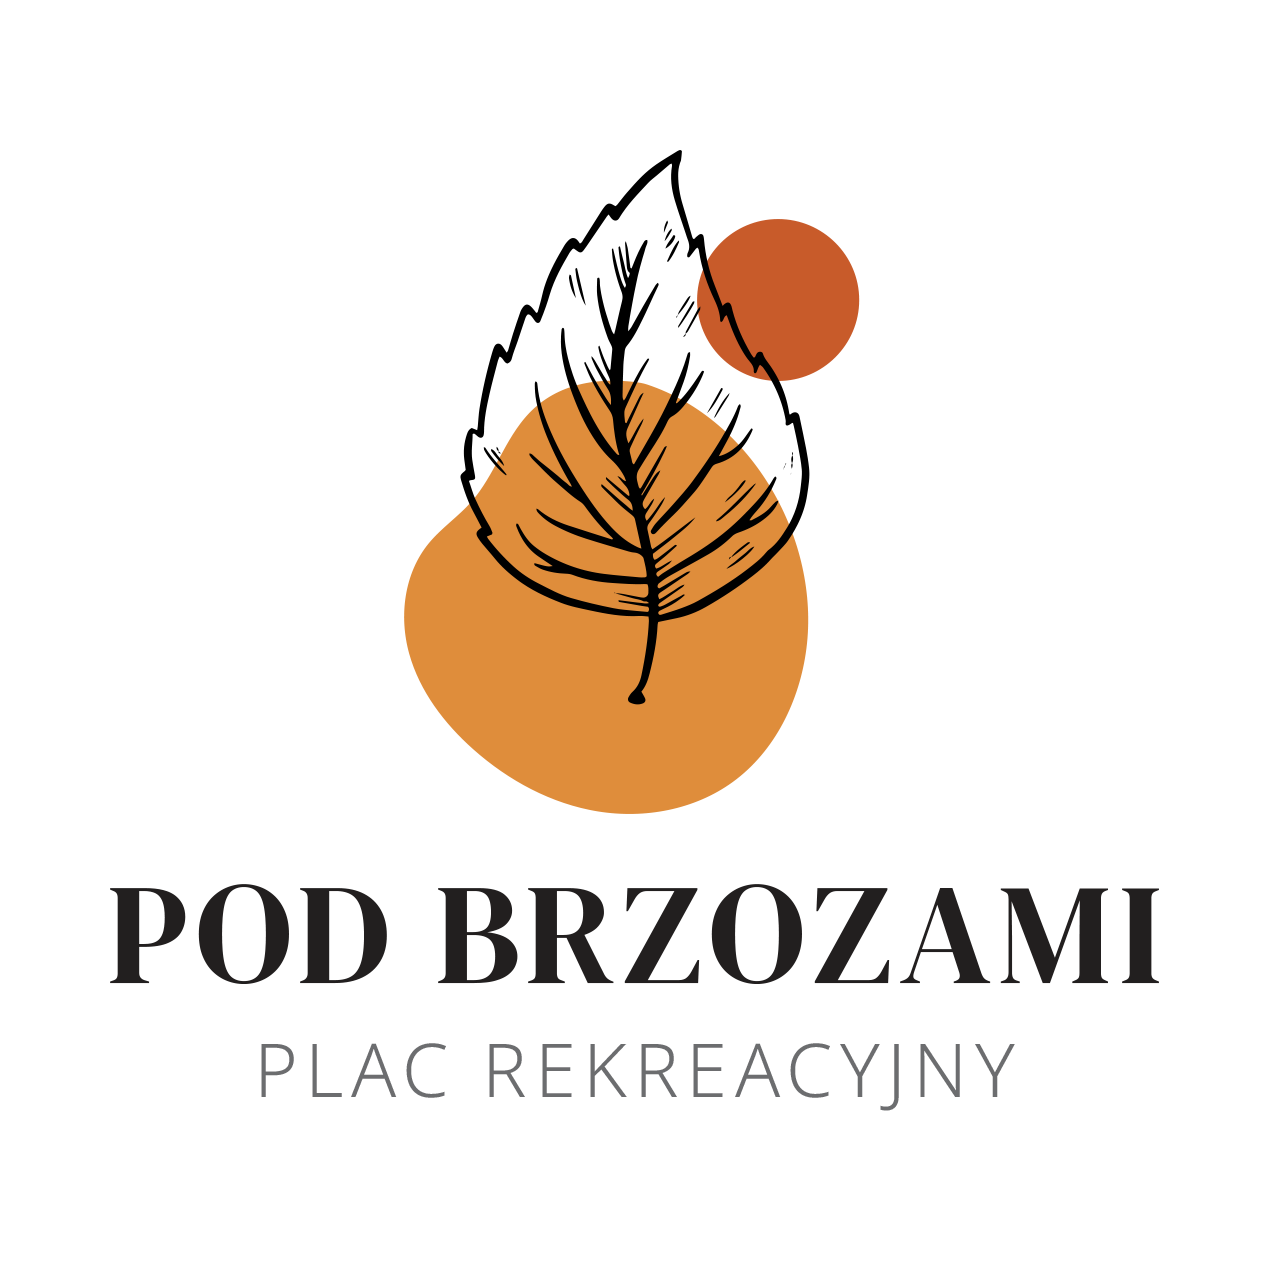 Plac-rekreacyjny-logo